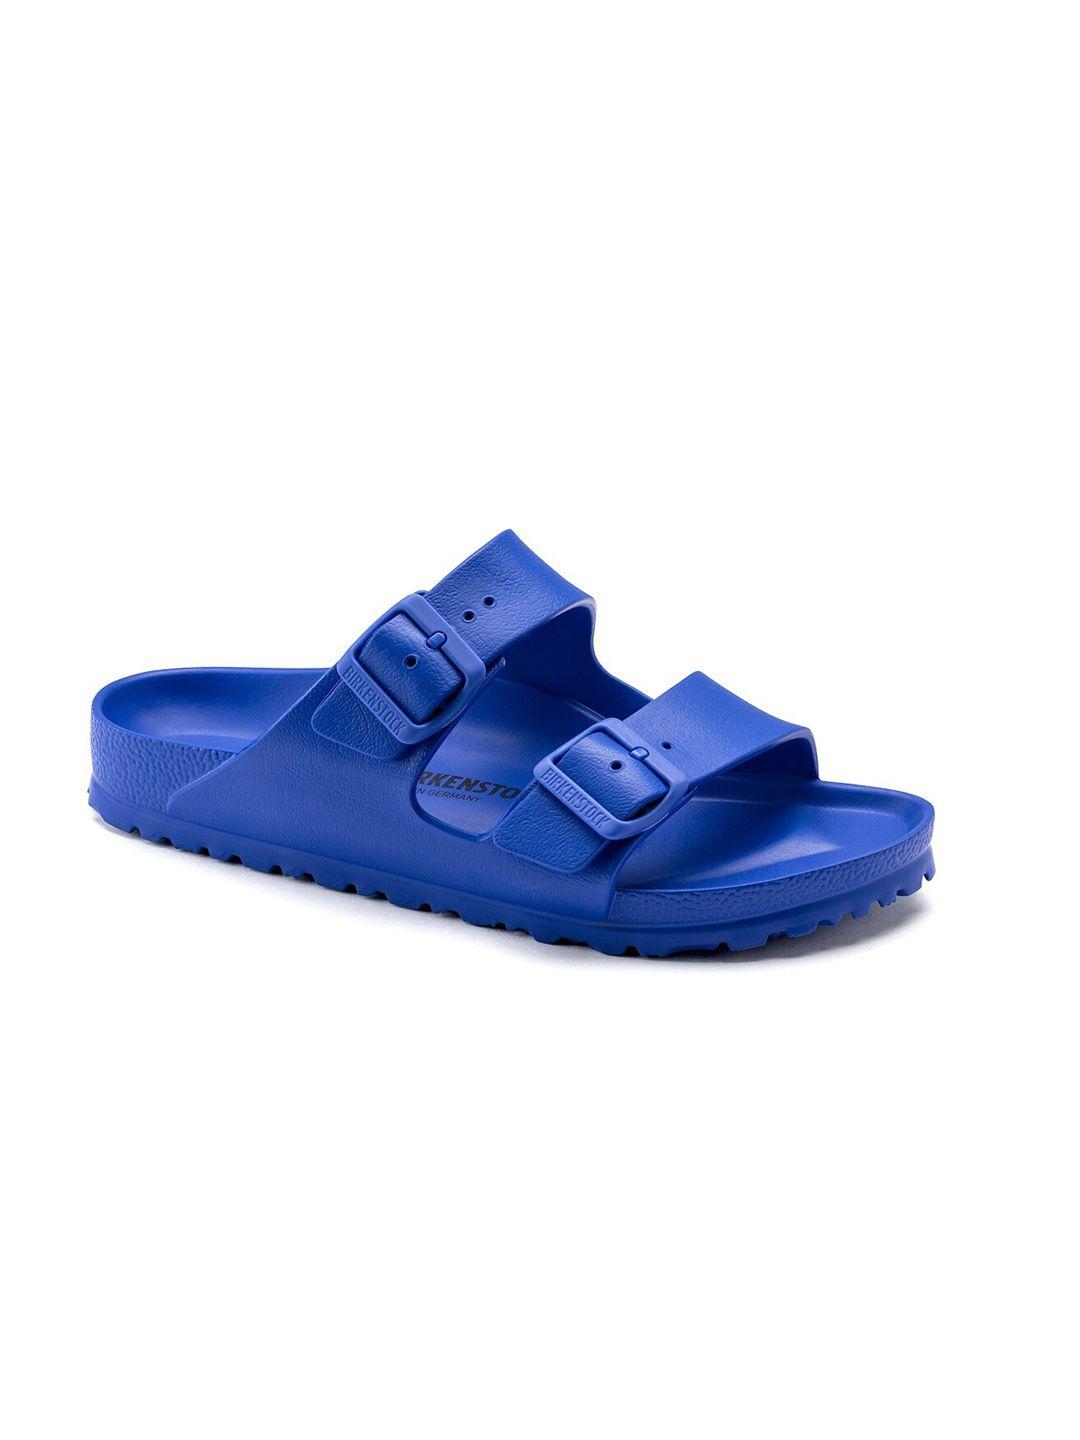 birkenstock-unisex-blue-arizona-comfort-sandals